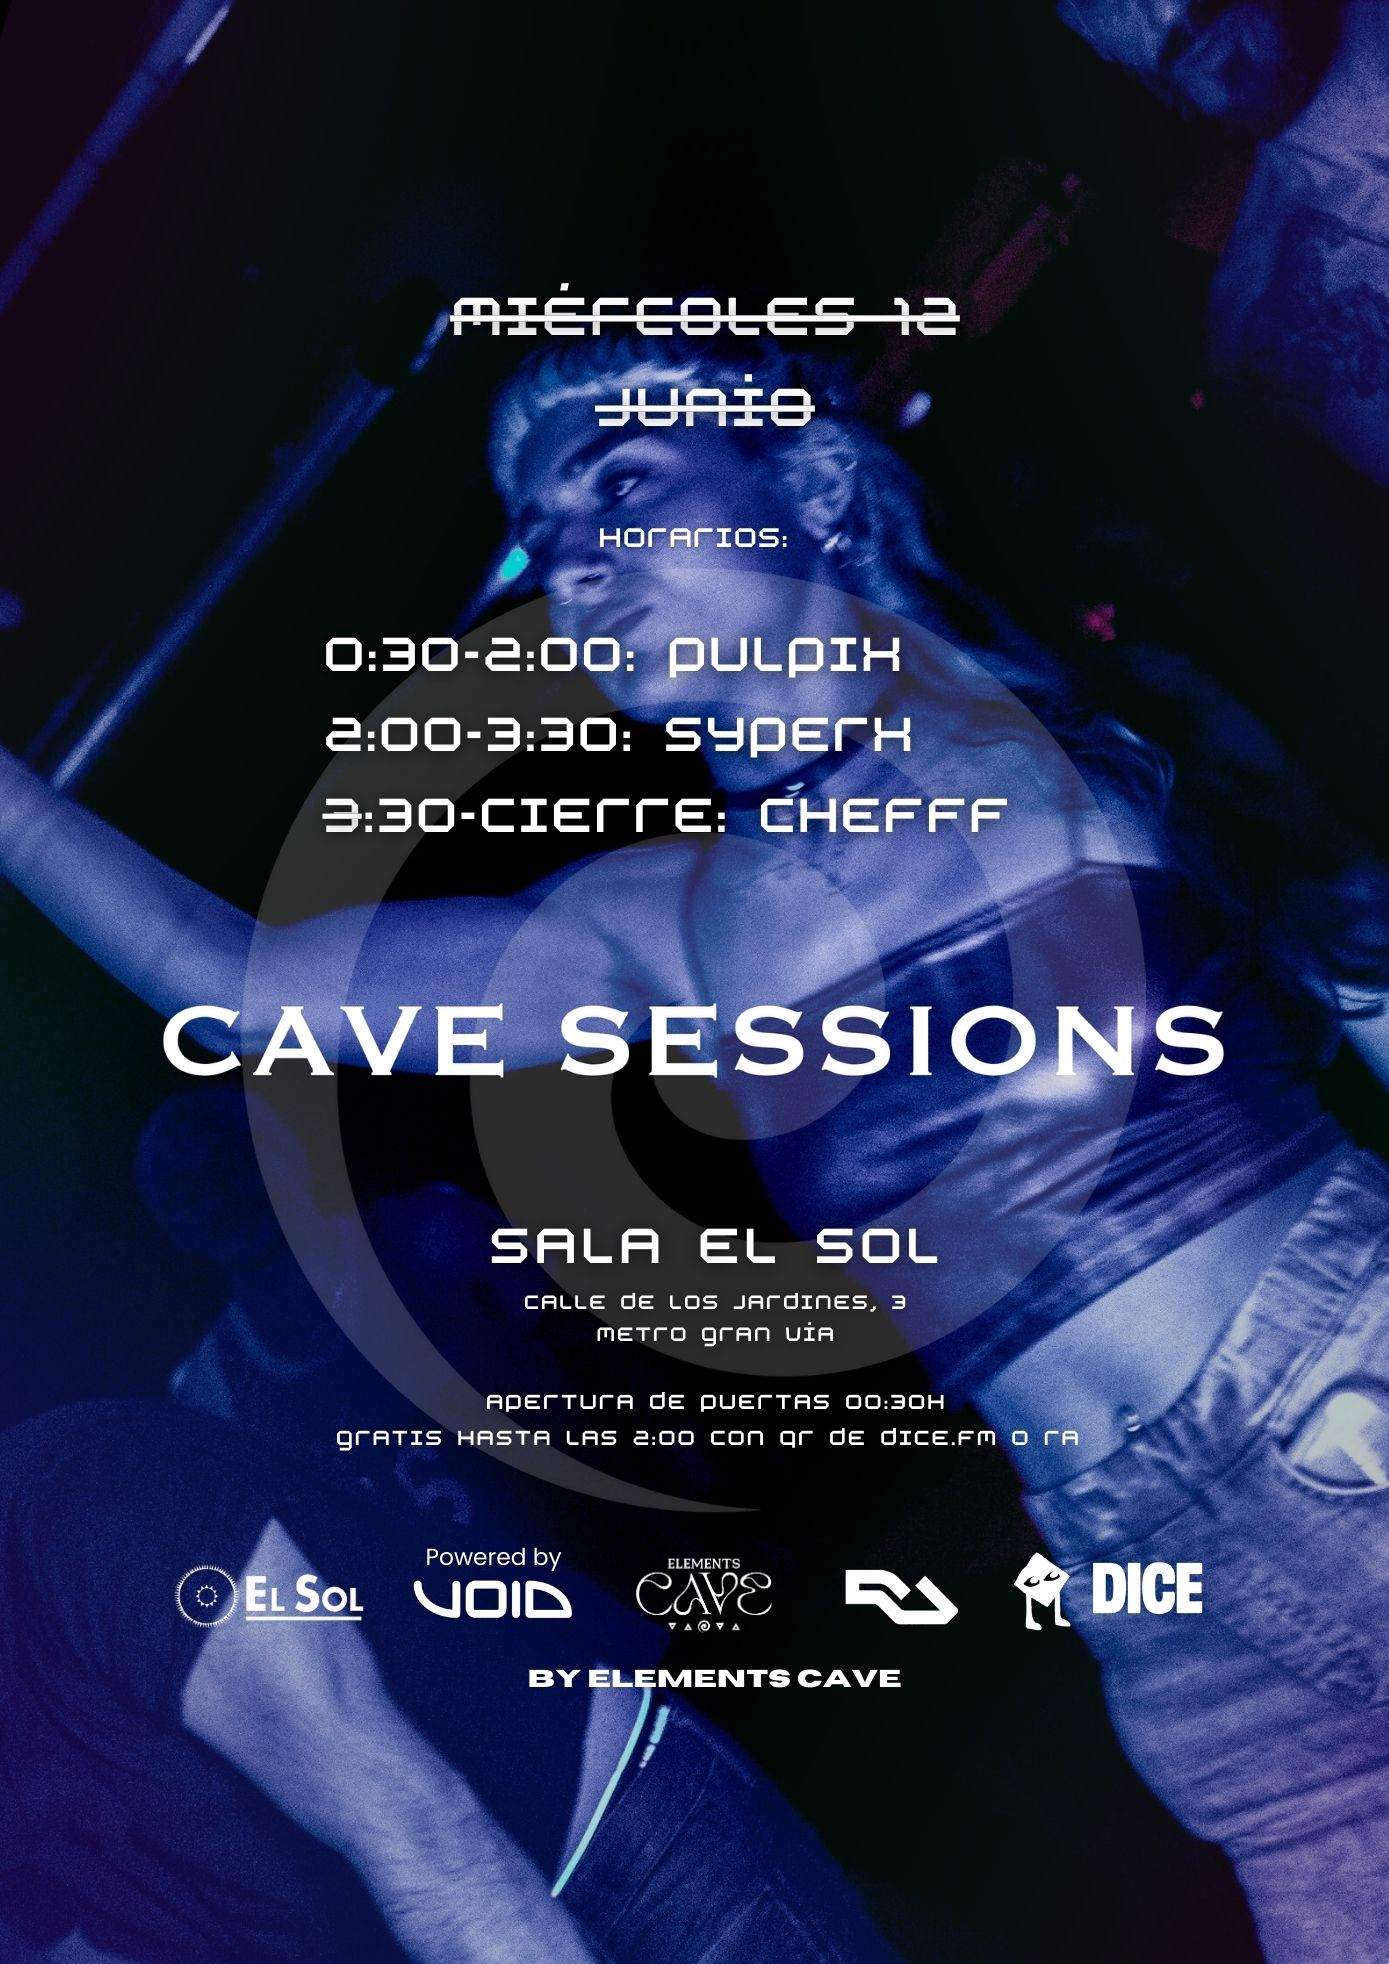 Cave Sessions by EC: Entrada gratis hasta las 2:00 con RA - フライヤー裏